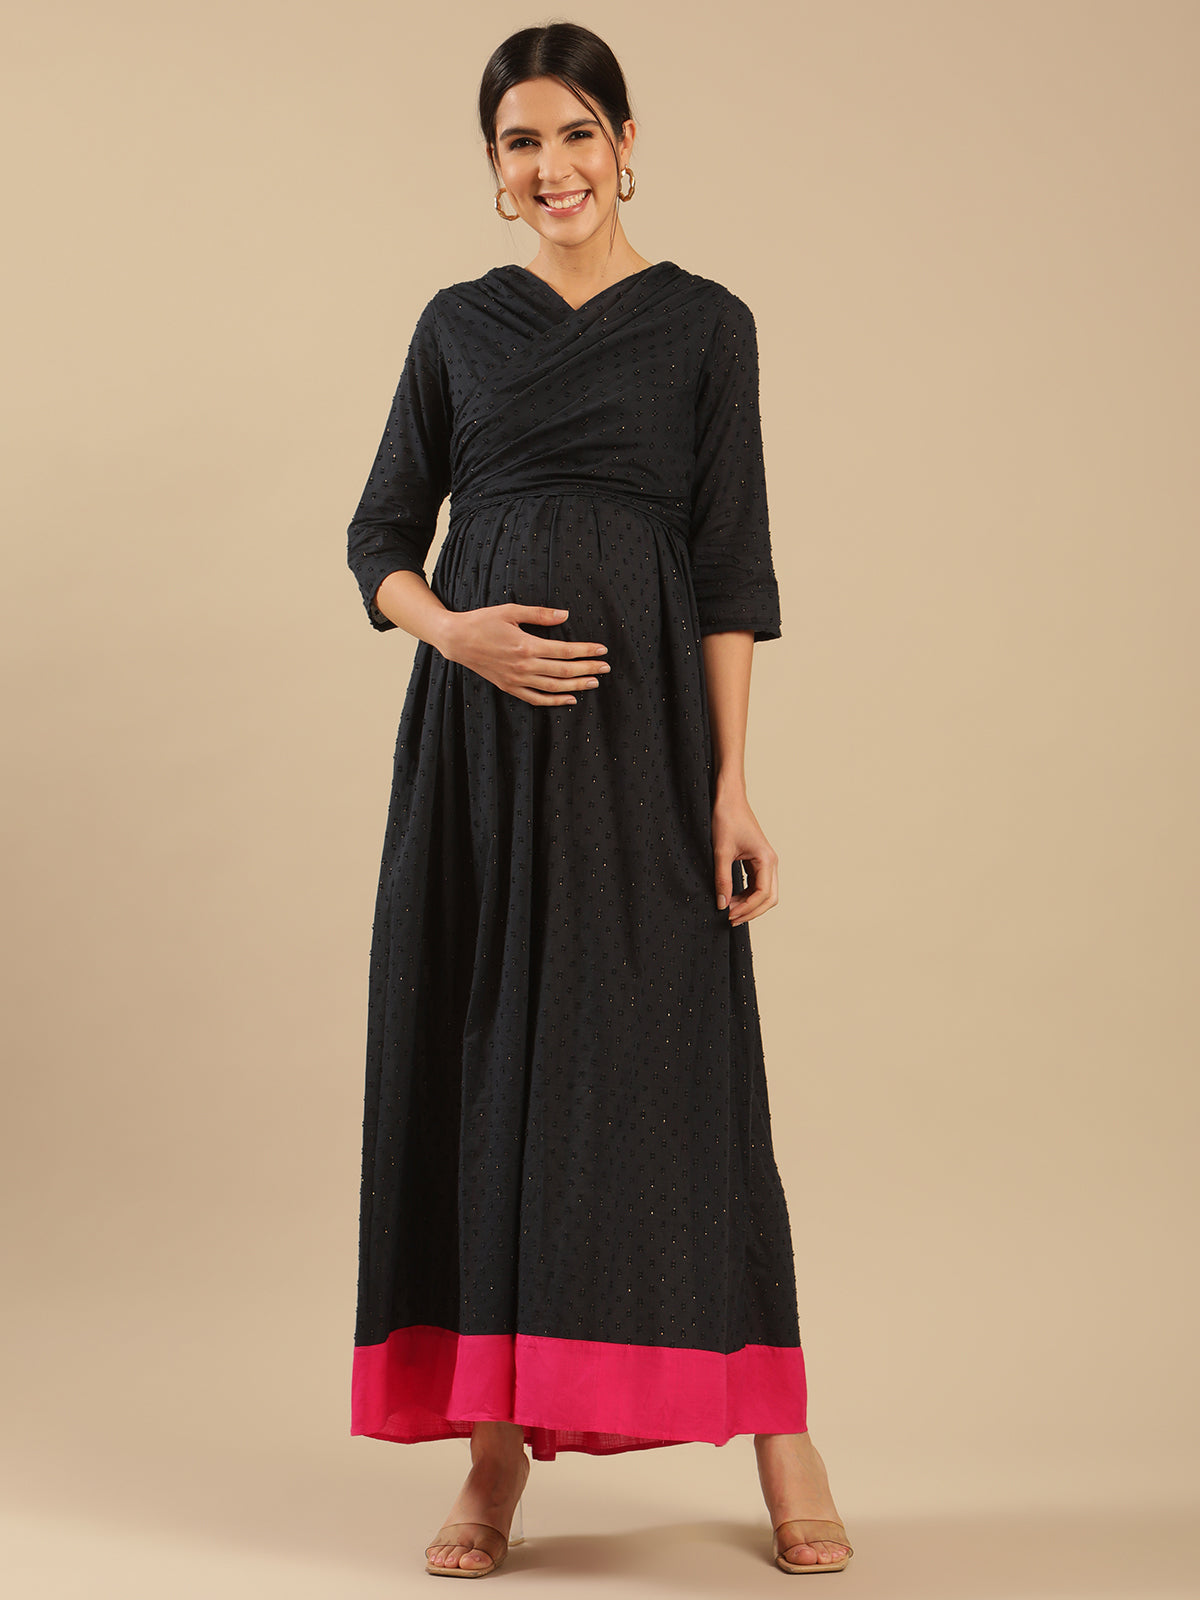 Cotton Knit Maternity Lounge Dress - Gray